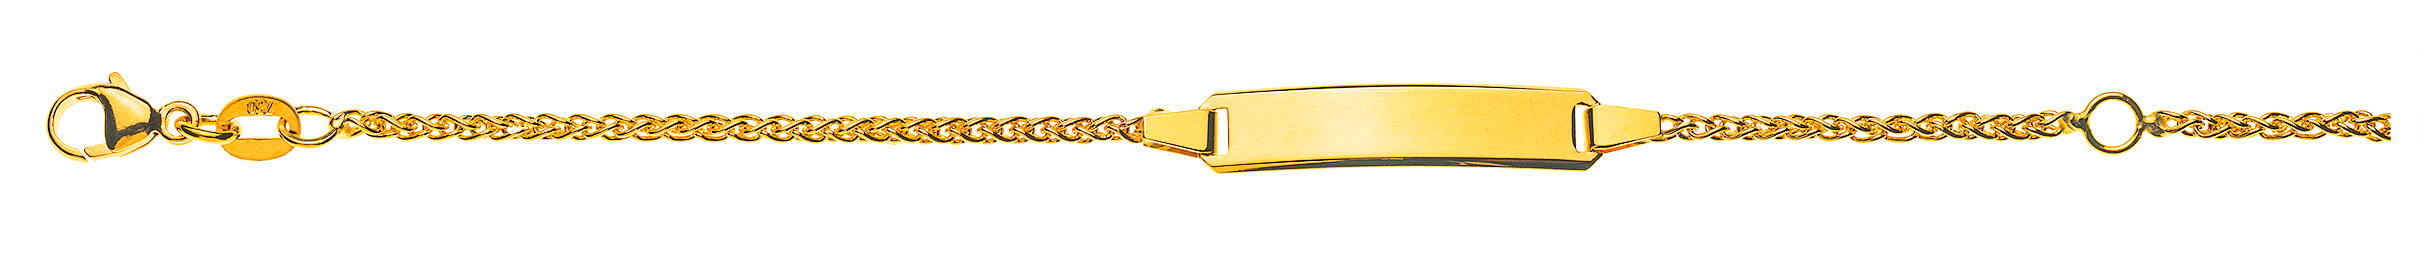 AURONOS Style ID bracelet 9k yellow gold plait chain 18cm